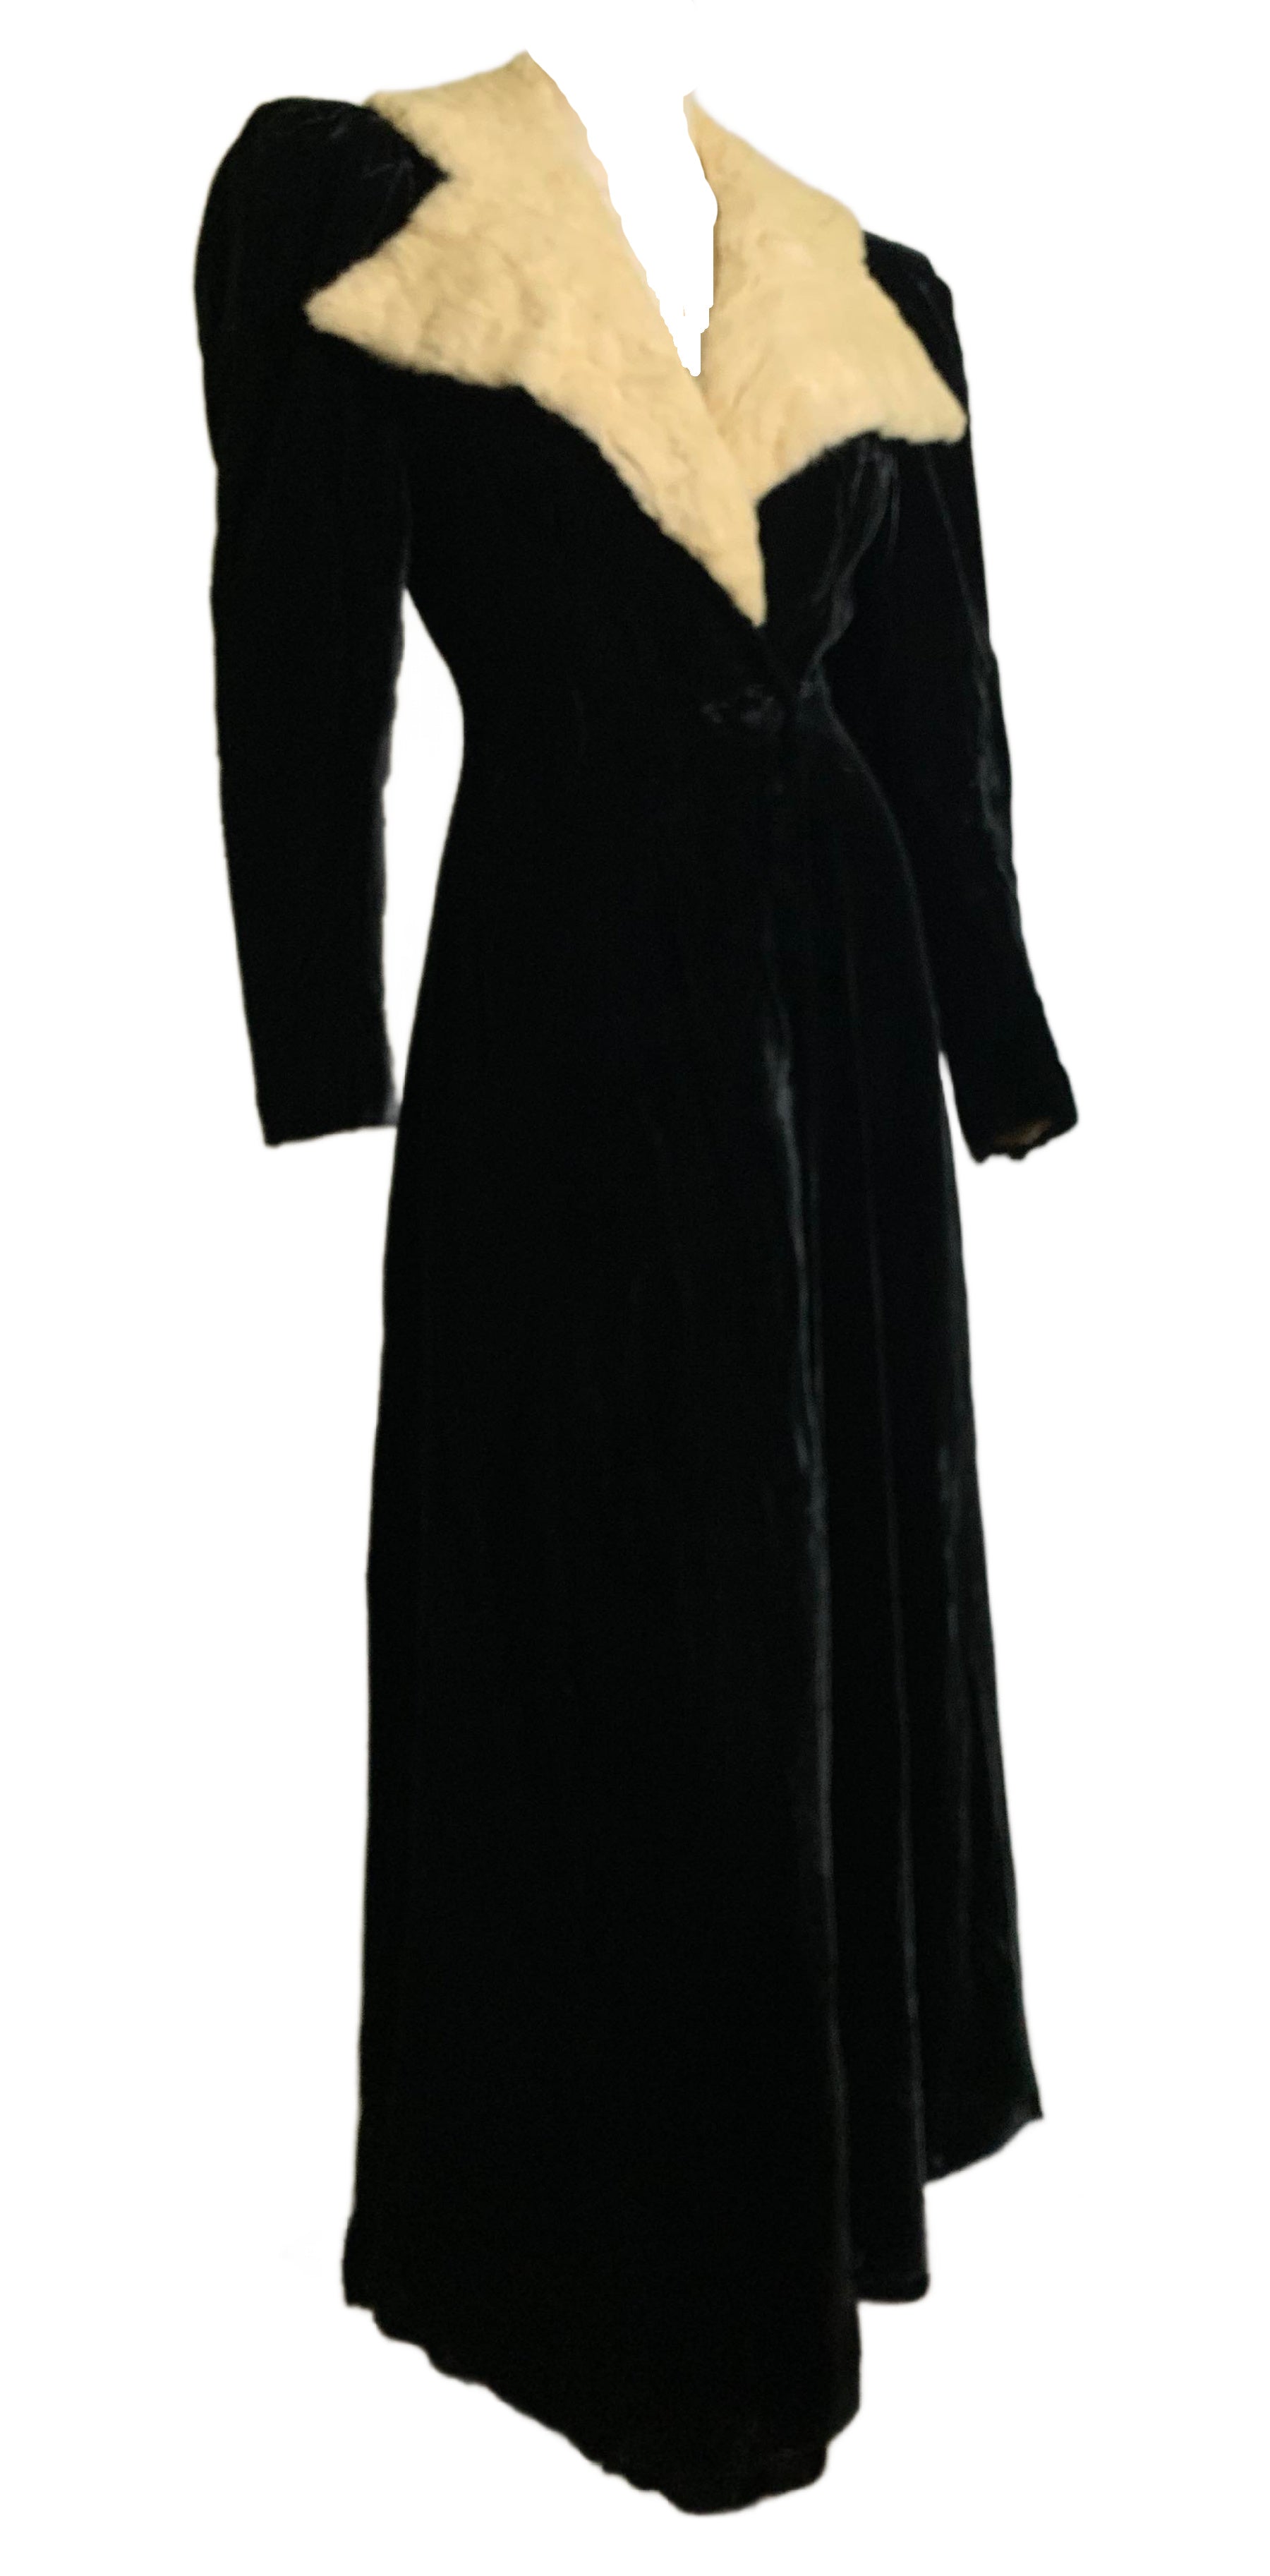 Iconic Black Velvet Princess Line Opera Coat with Ermine Collar